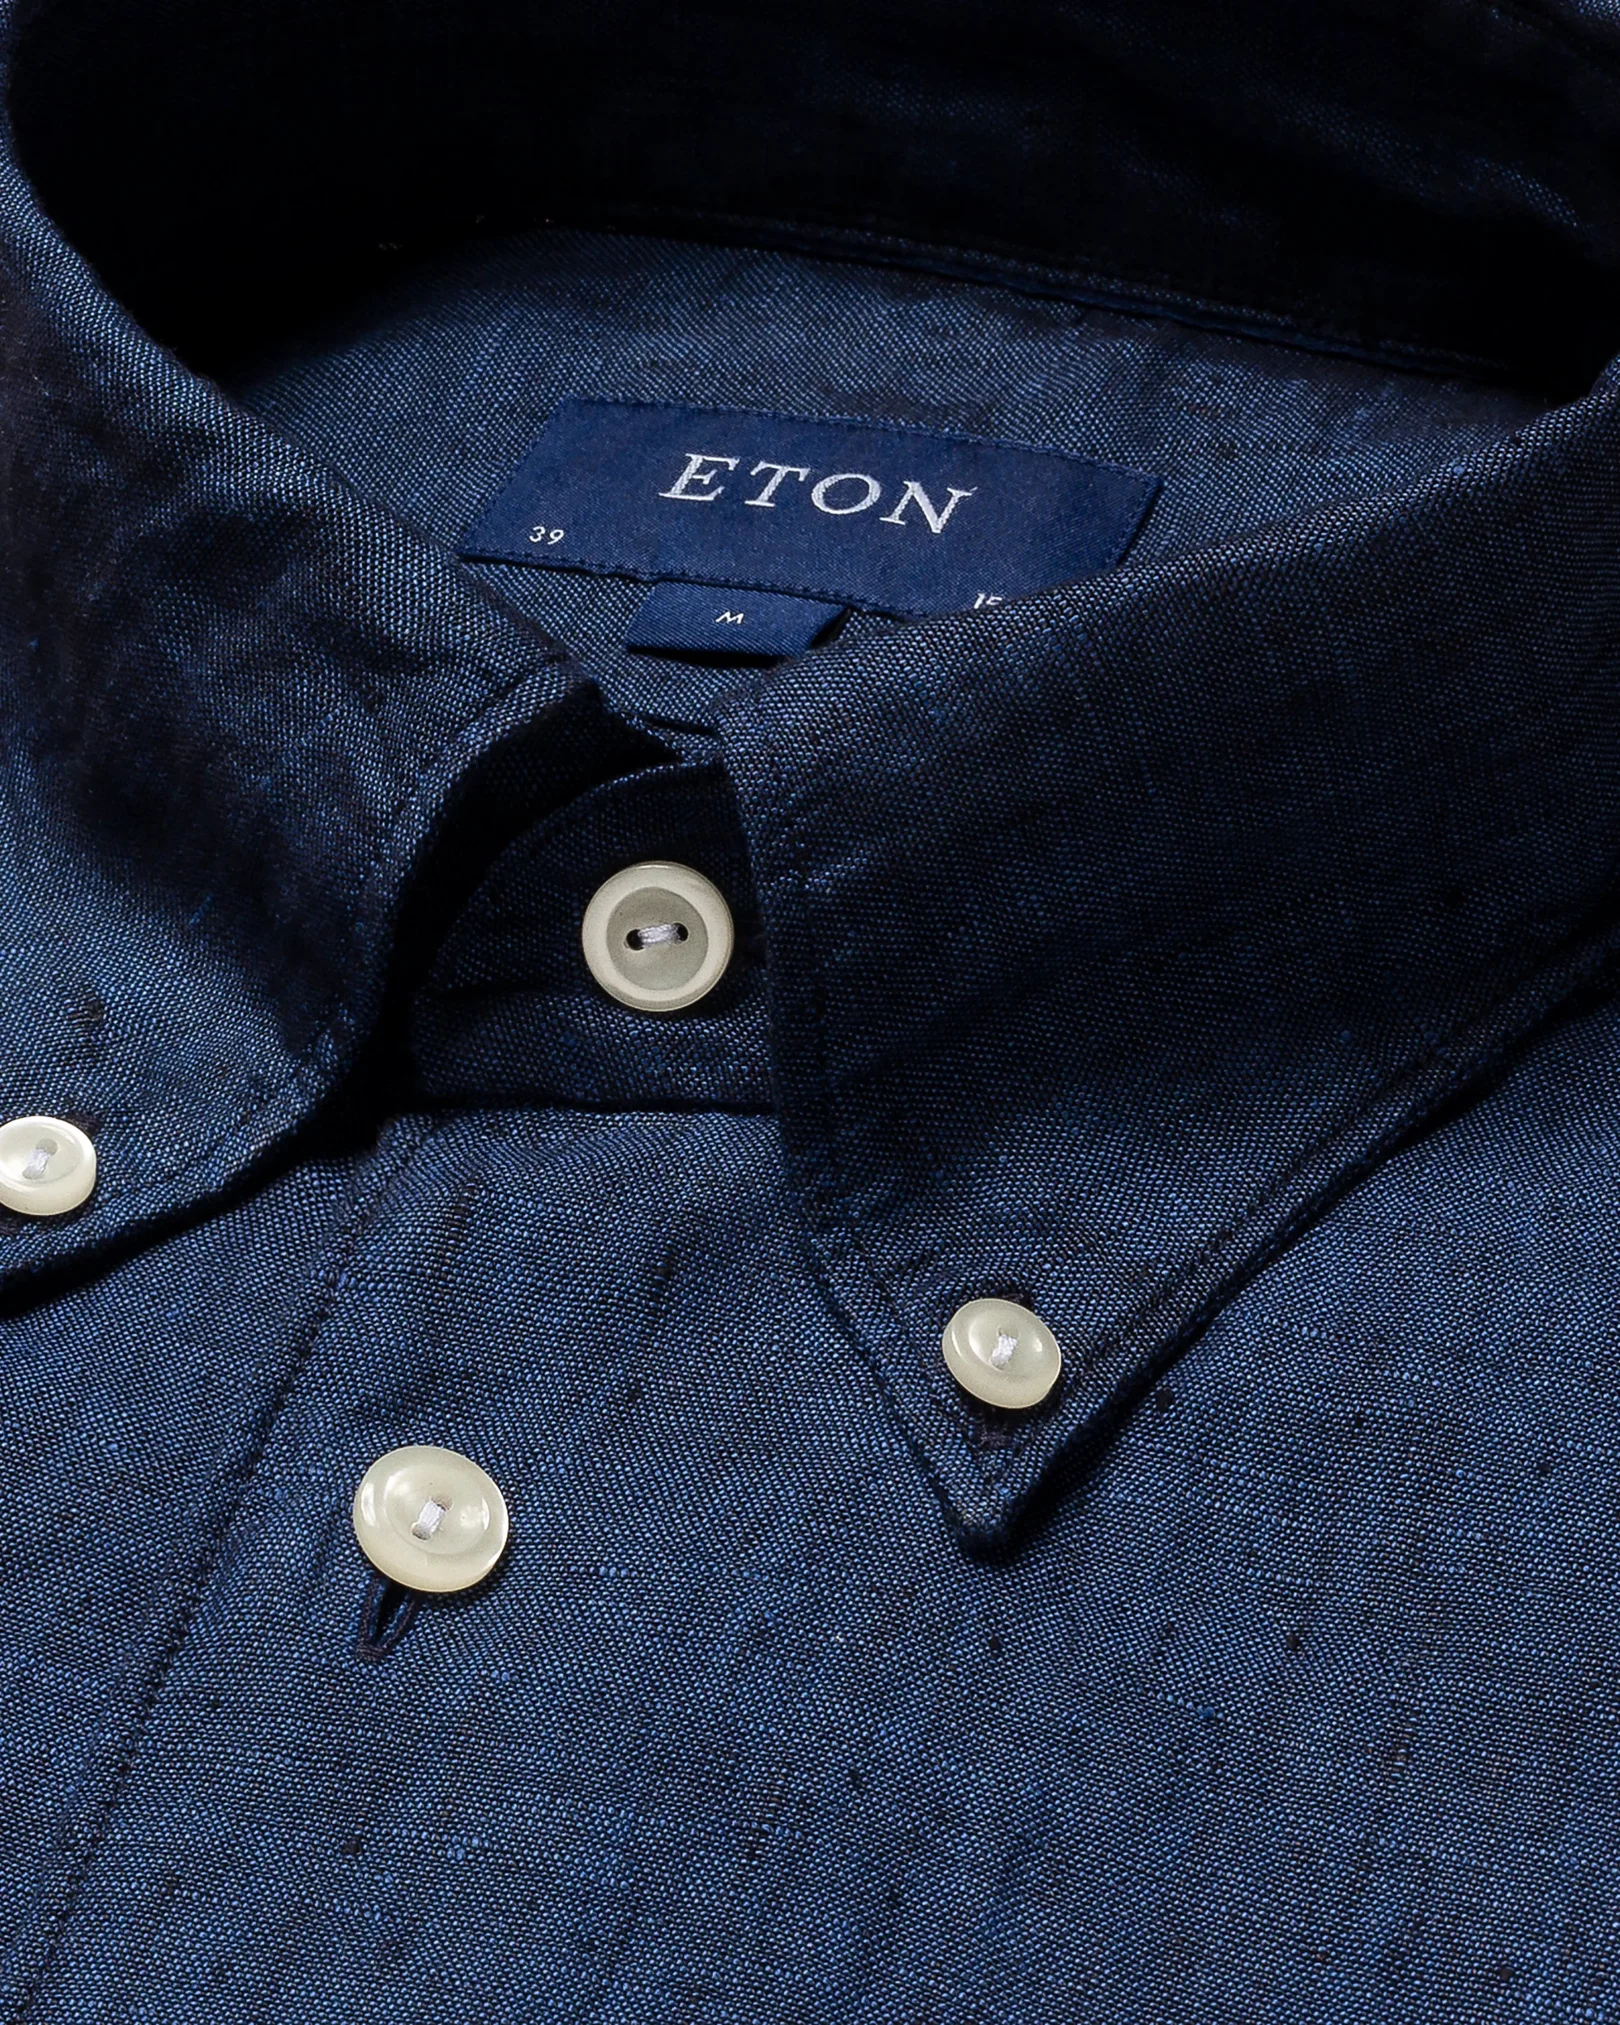 Eton - blue linen shirt button down collar